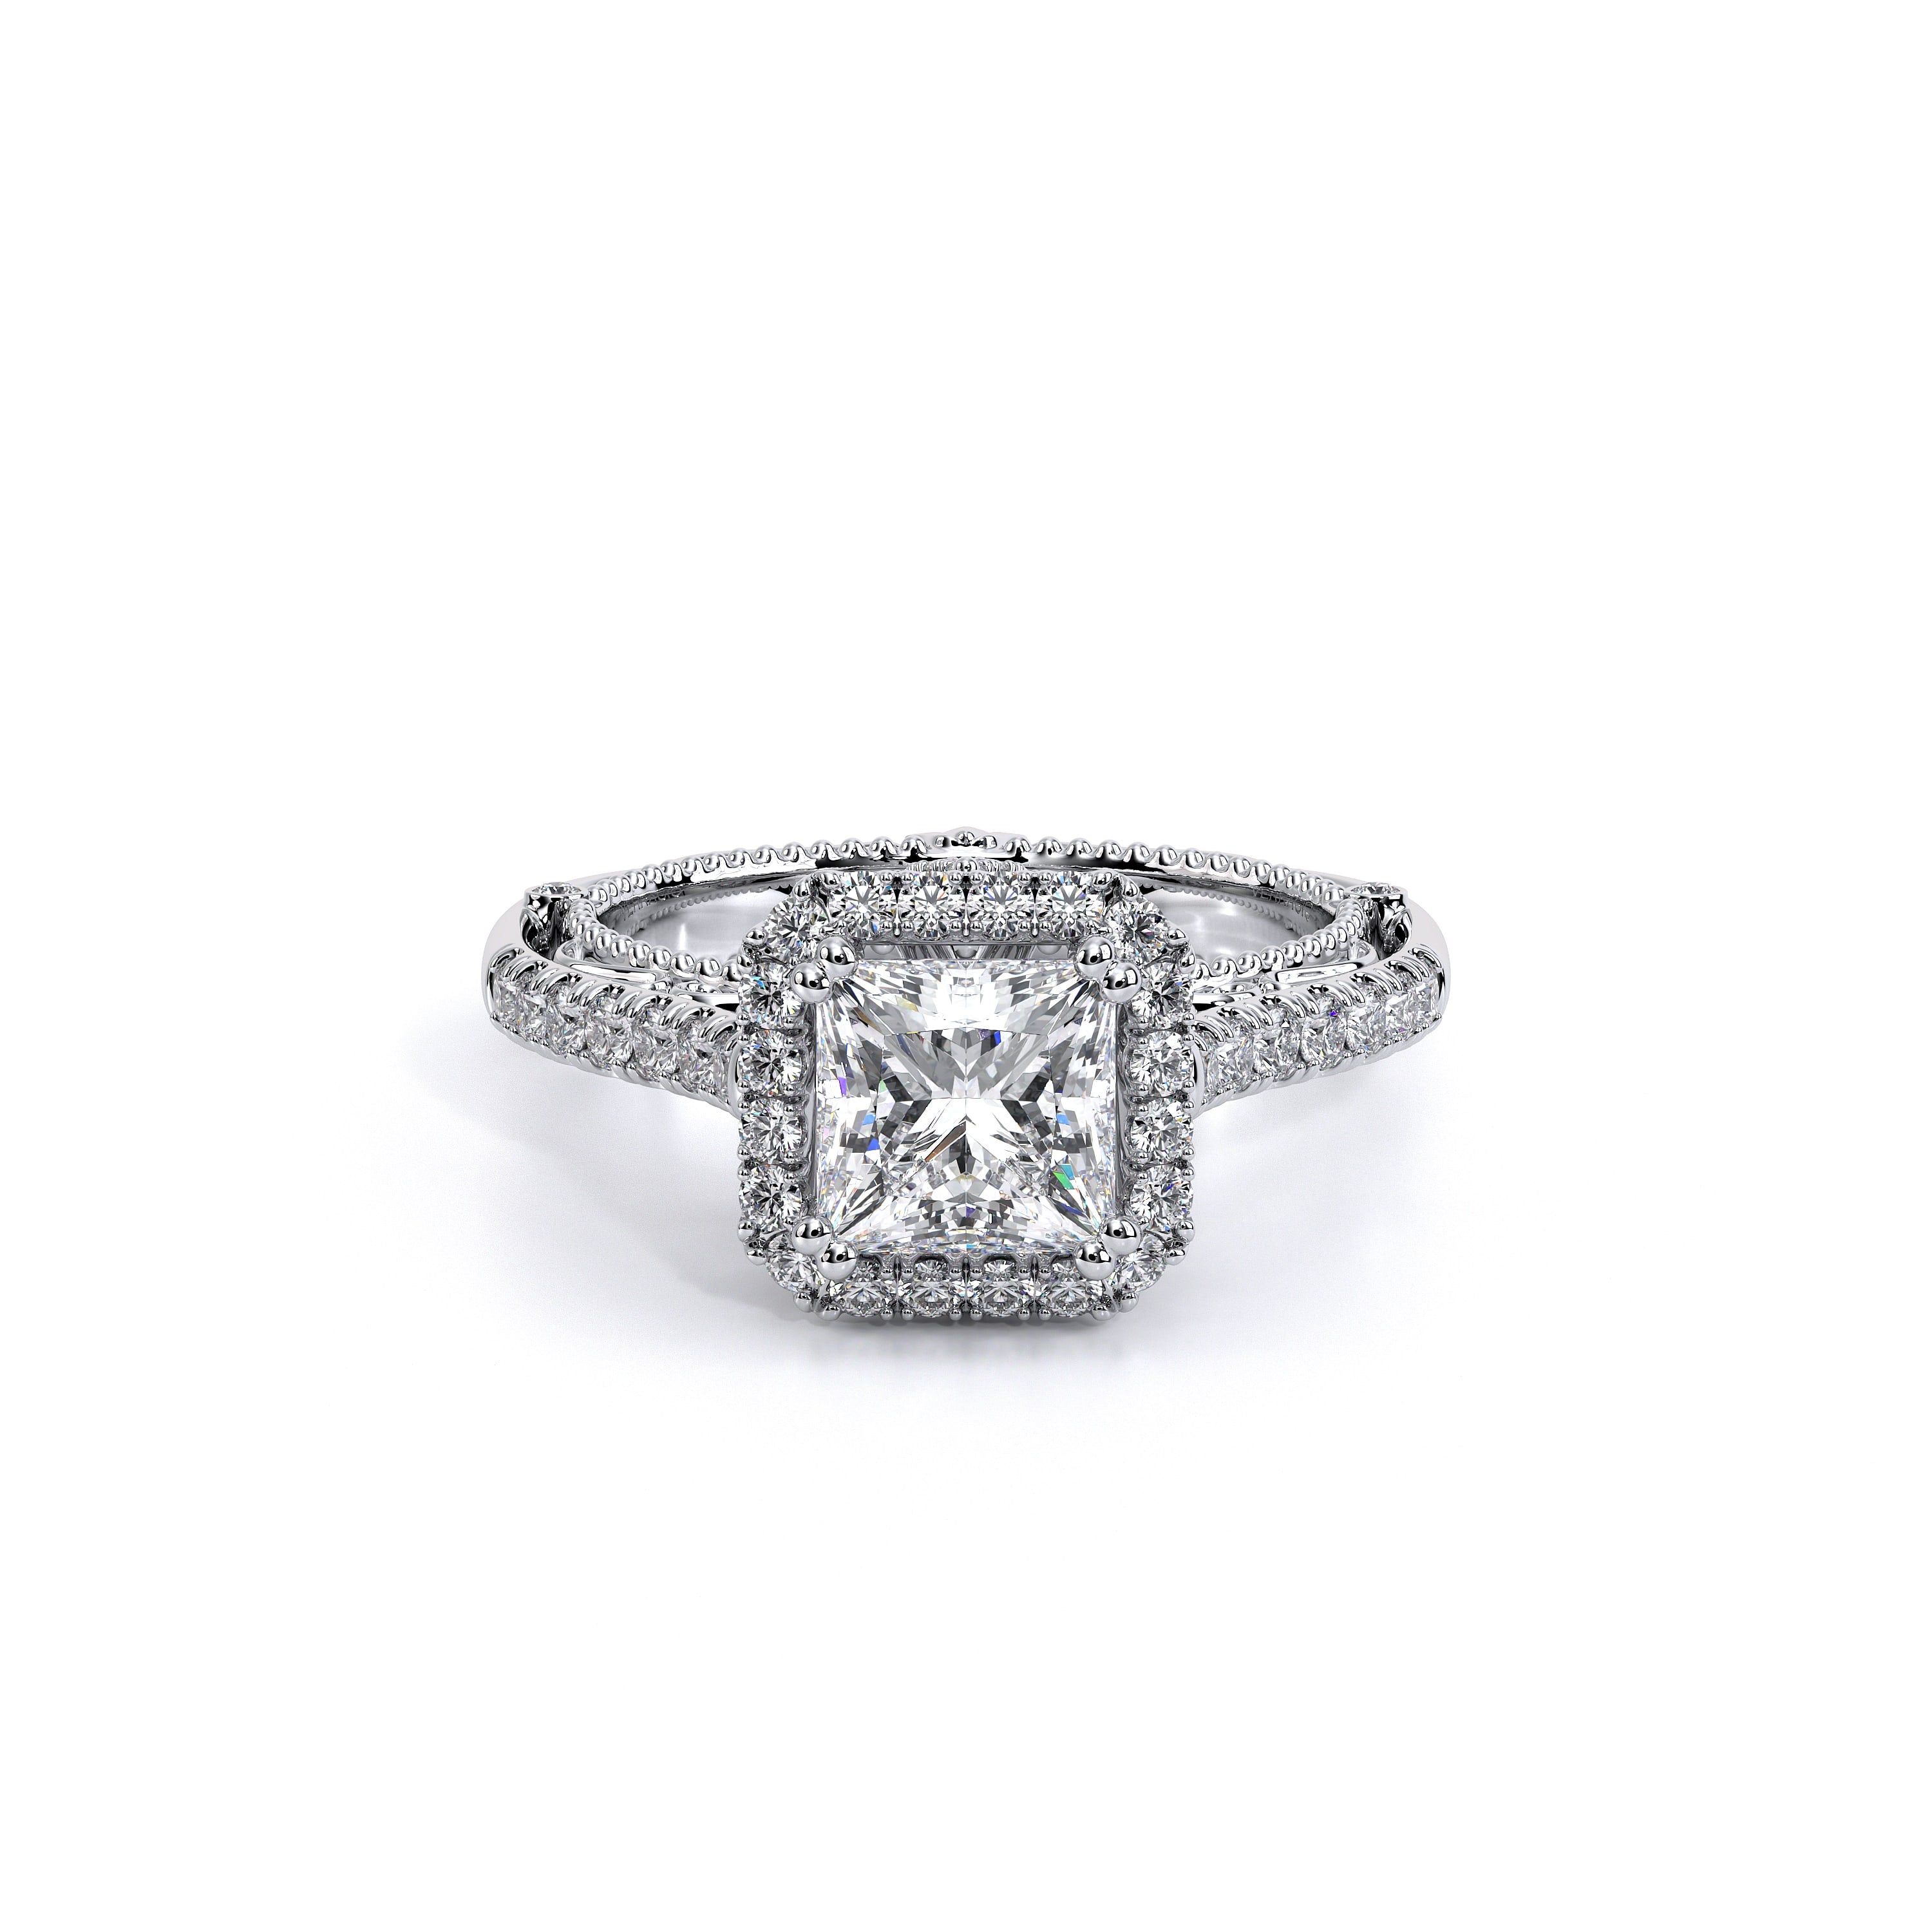 Venetian Princess Cut Engagement Ring Setting